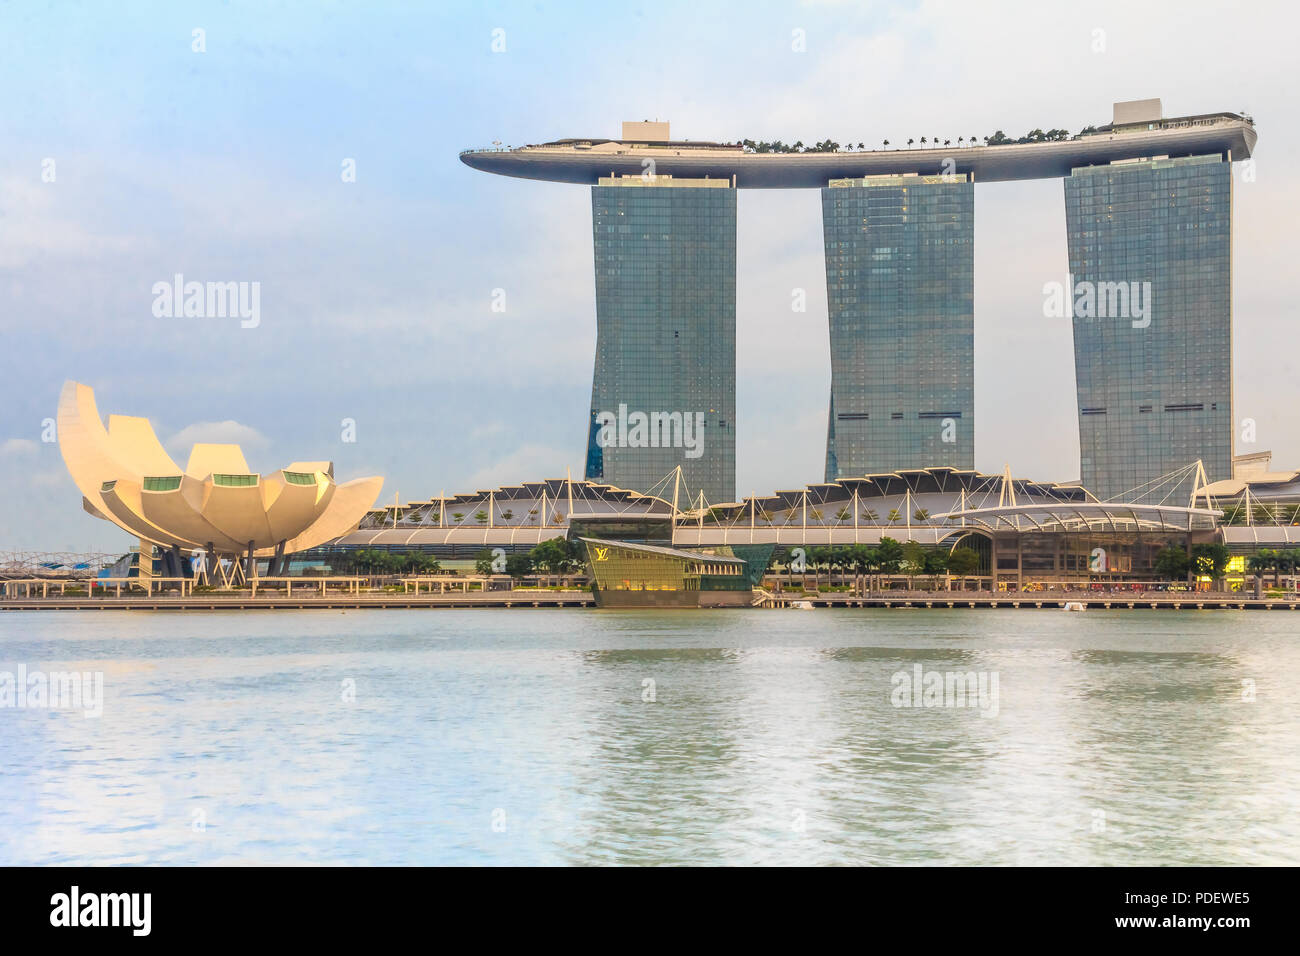 Singapour, Singapour - Le 20 janvier 2014 : l'hôtel en forme de planche de surf luxueuses et Marina Bay Sands casino et lotus-musée ArtScience inspiré avant Banque D'Images